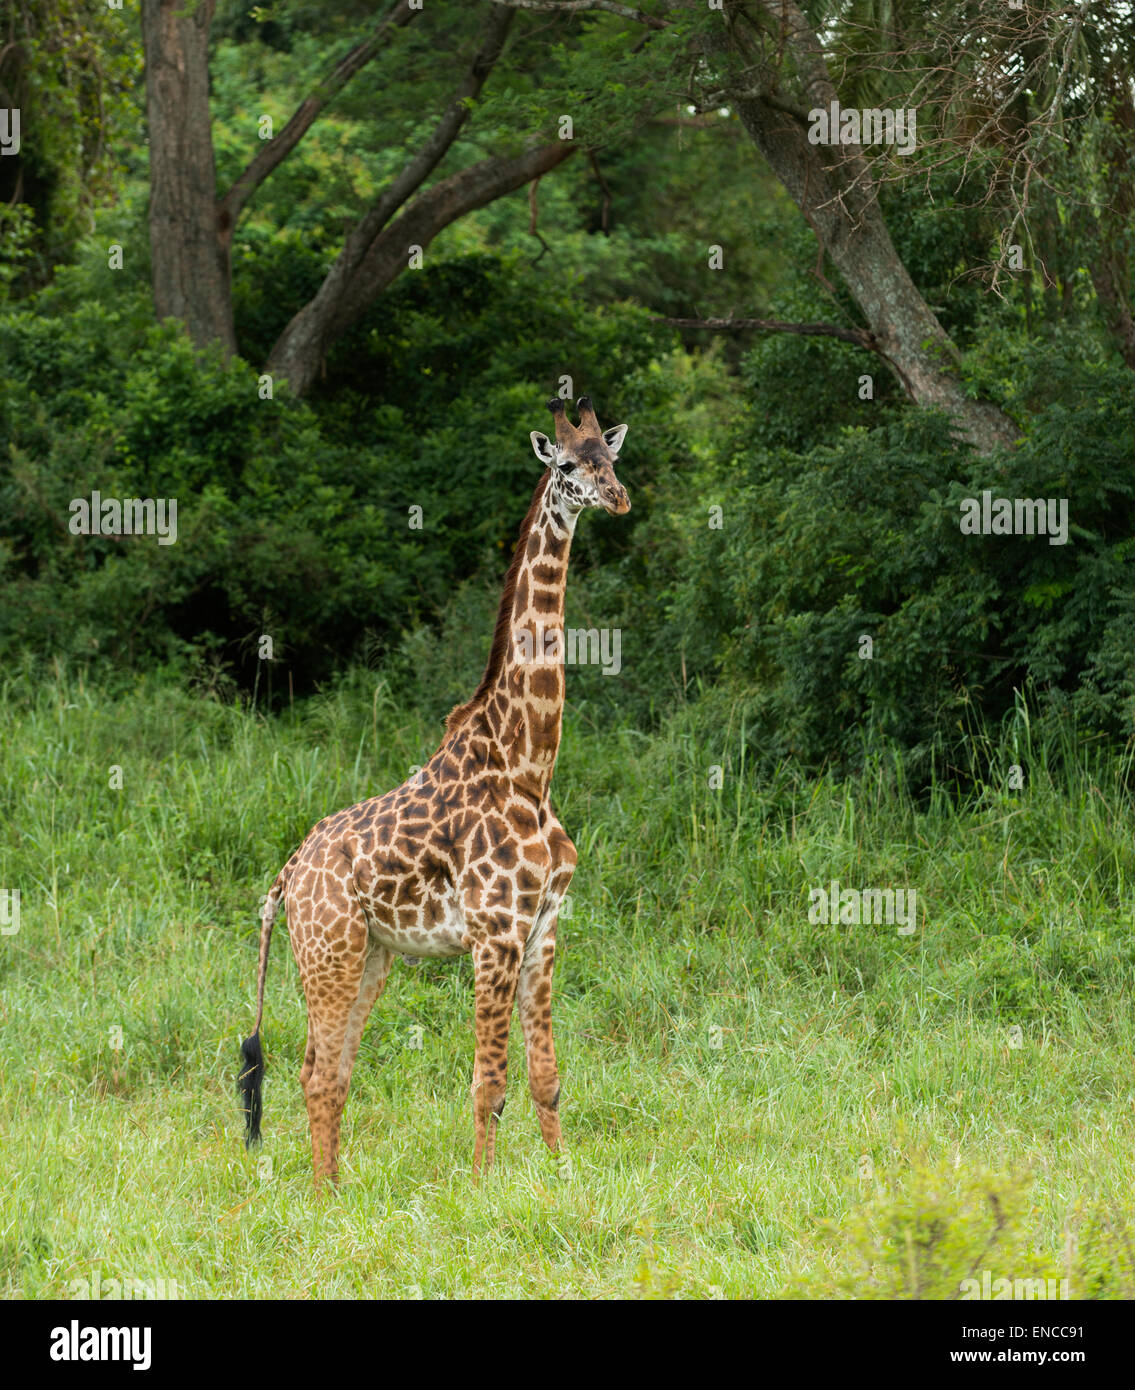 Young giraffe standing, Serengeti, Tanzania, Africa Stock Photo